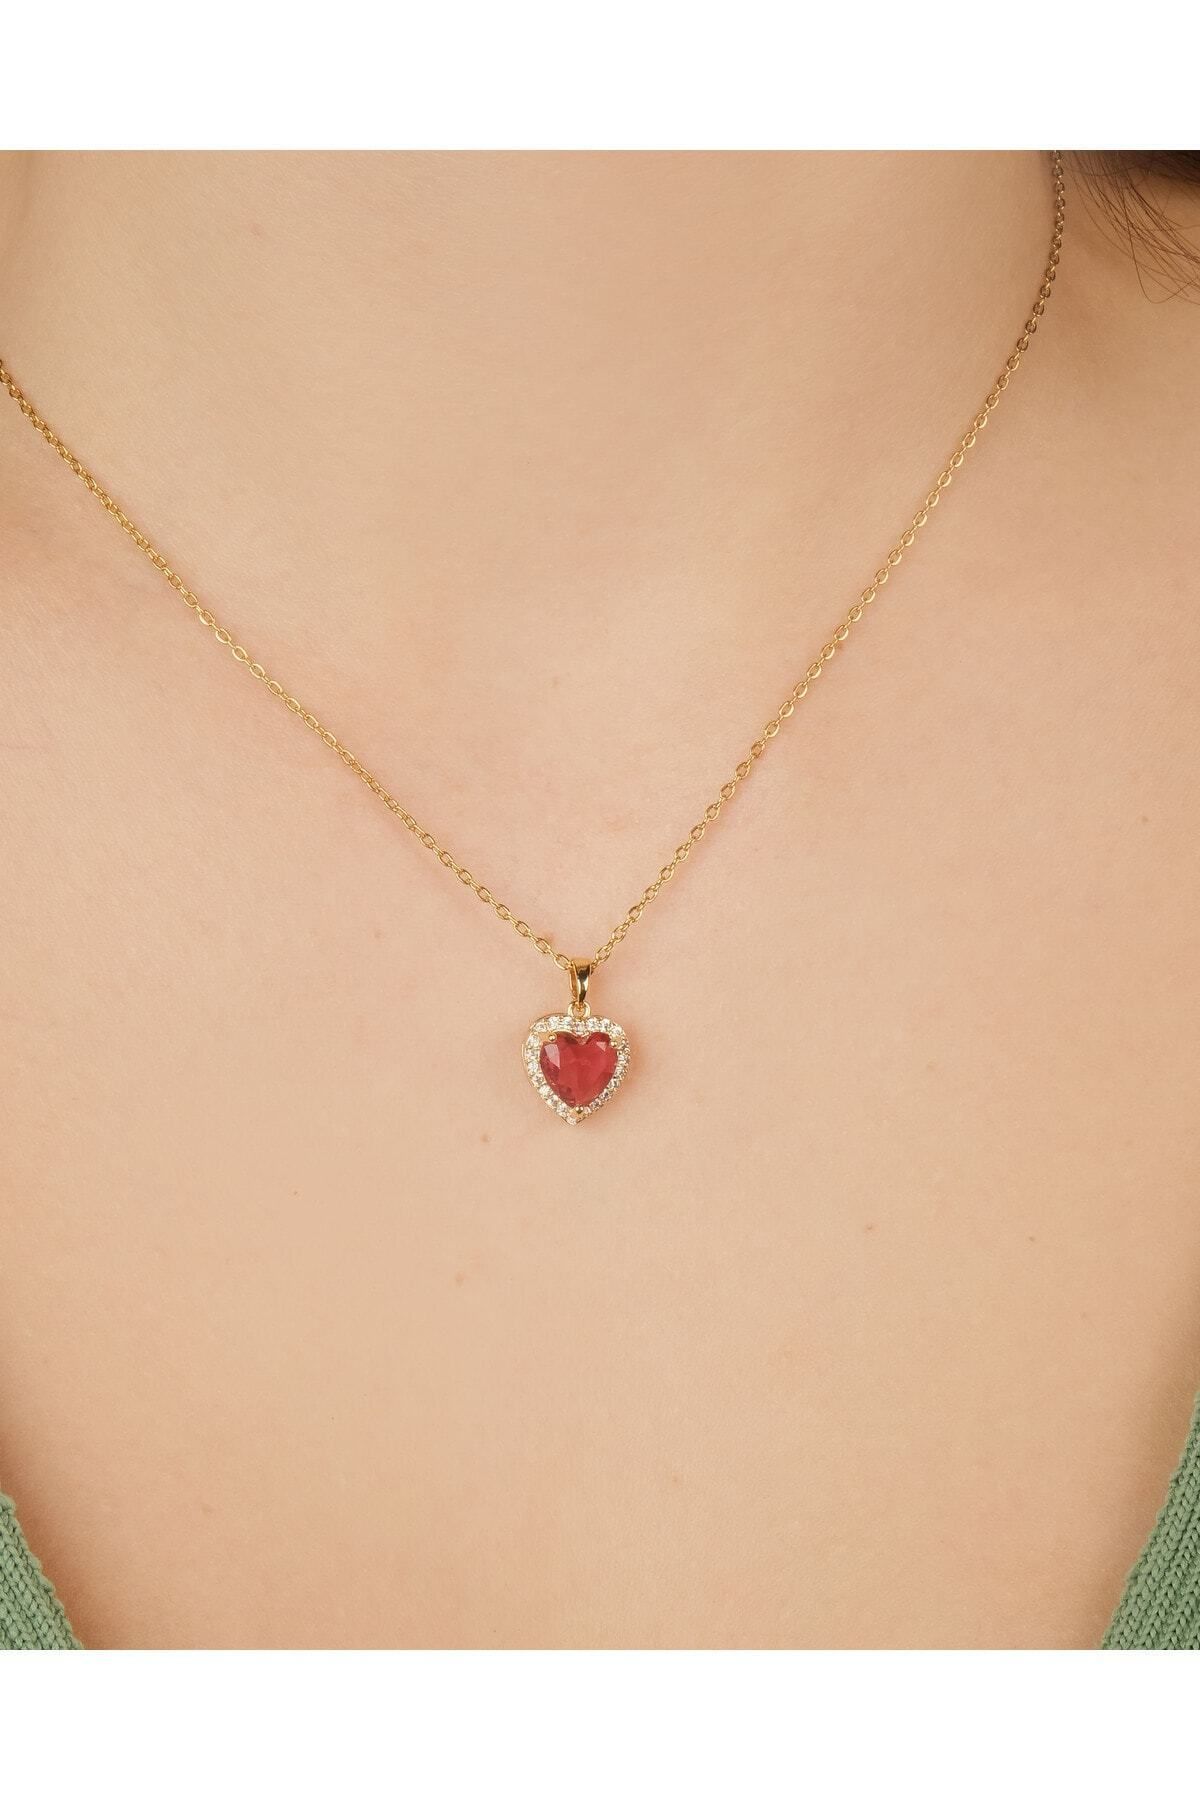 Lekka Design Kadın Kararmaz Çelik Takı Kırmızı Zirkon Taşlı Kalpli Aşk Kolye